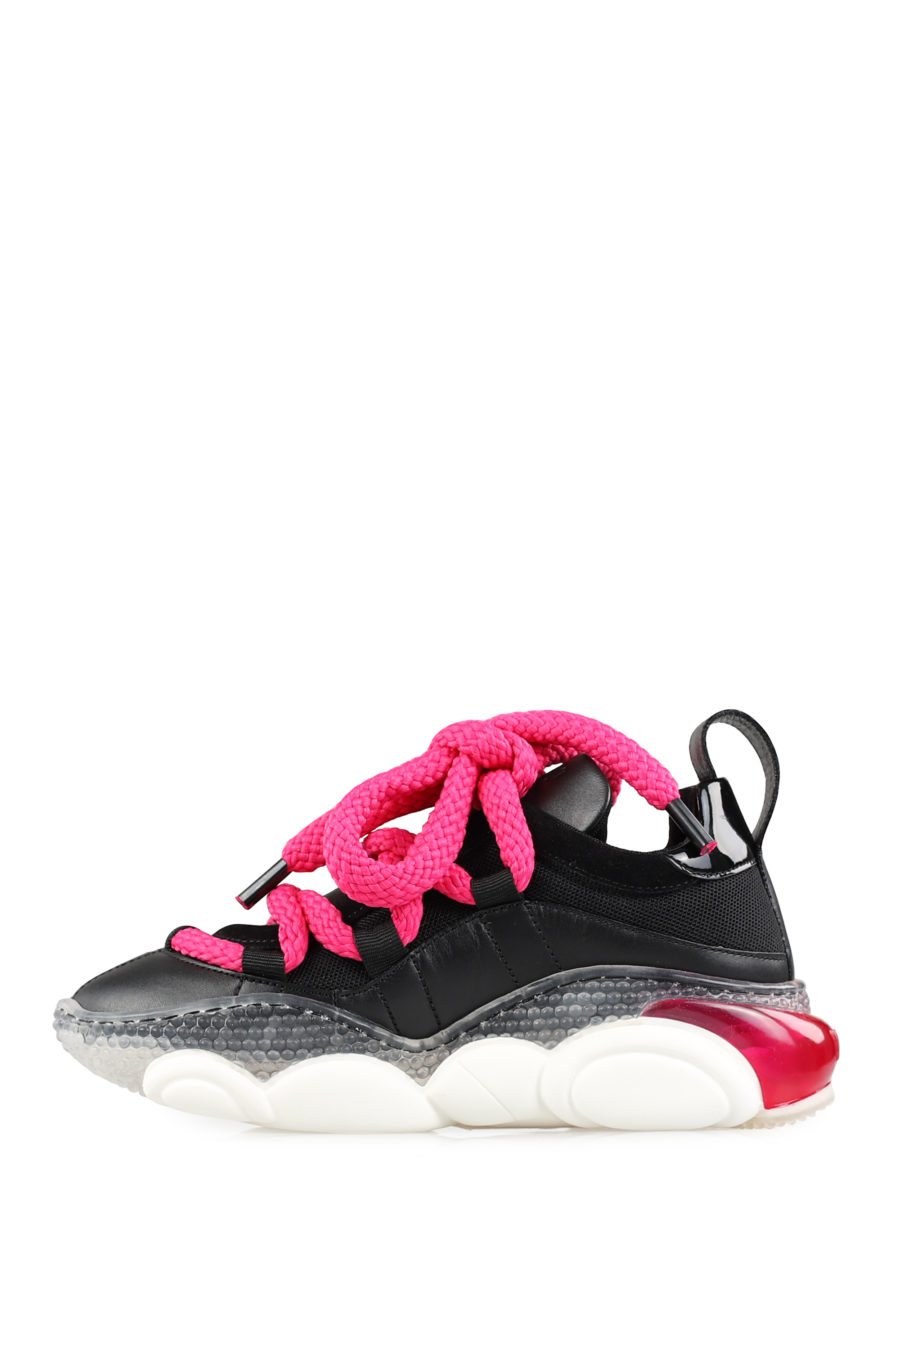 Zapatillas negras "BubbleTeddy" con maxicordones color rosa - f58ec529c2cf7c4286d52f4c0453b23ddc296a81